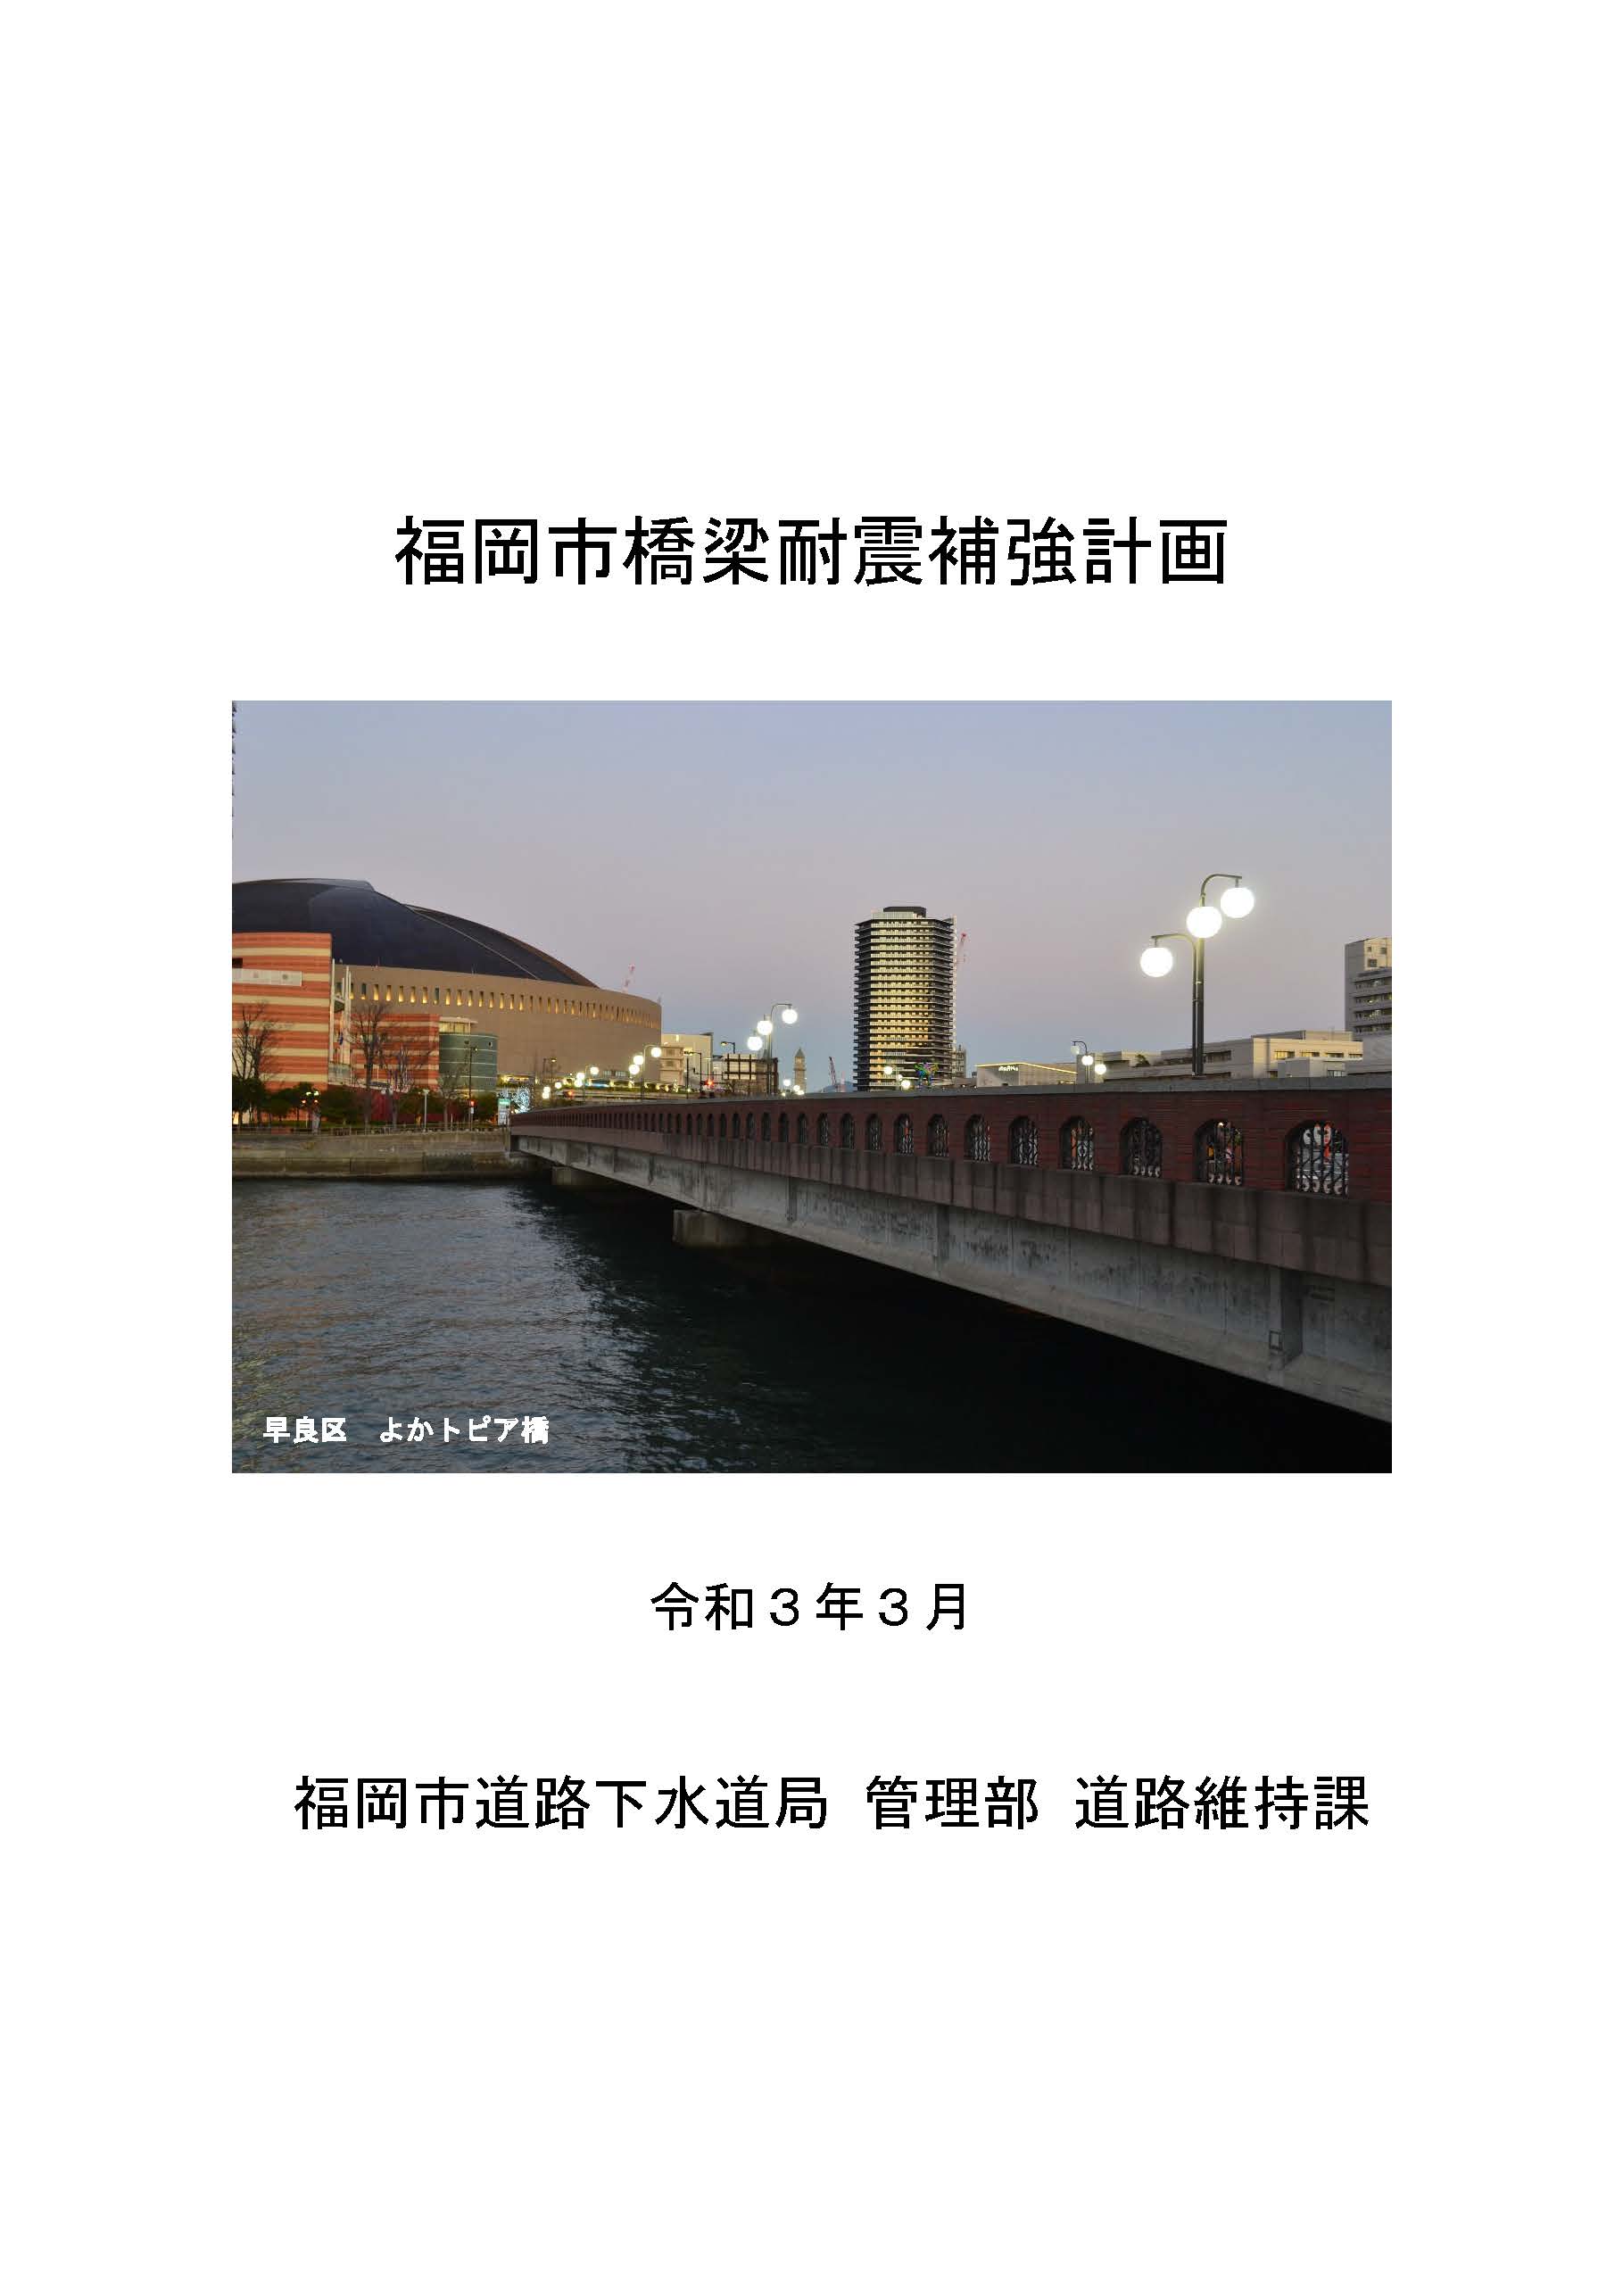 福岡市橋梁耐震補強計画の表紙の画像